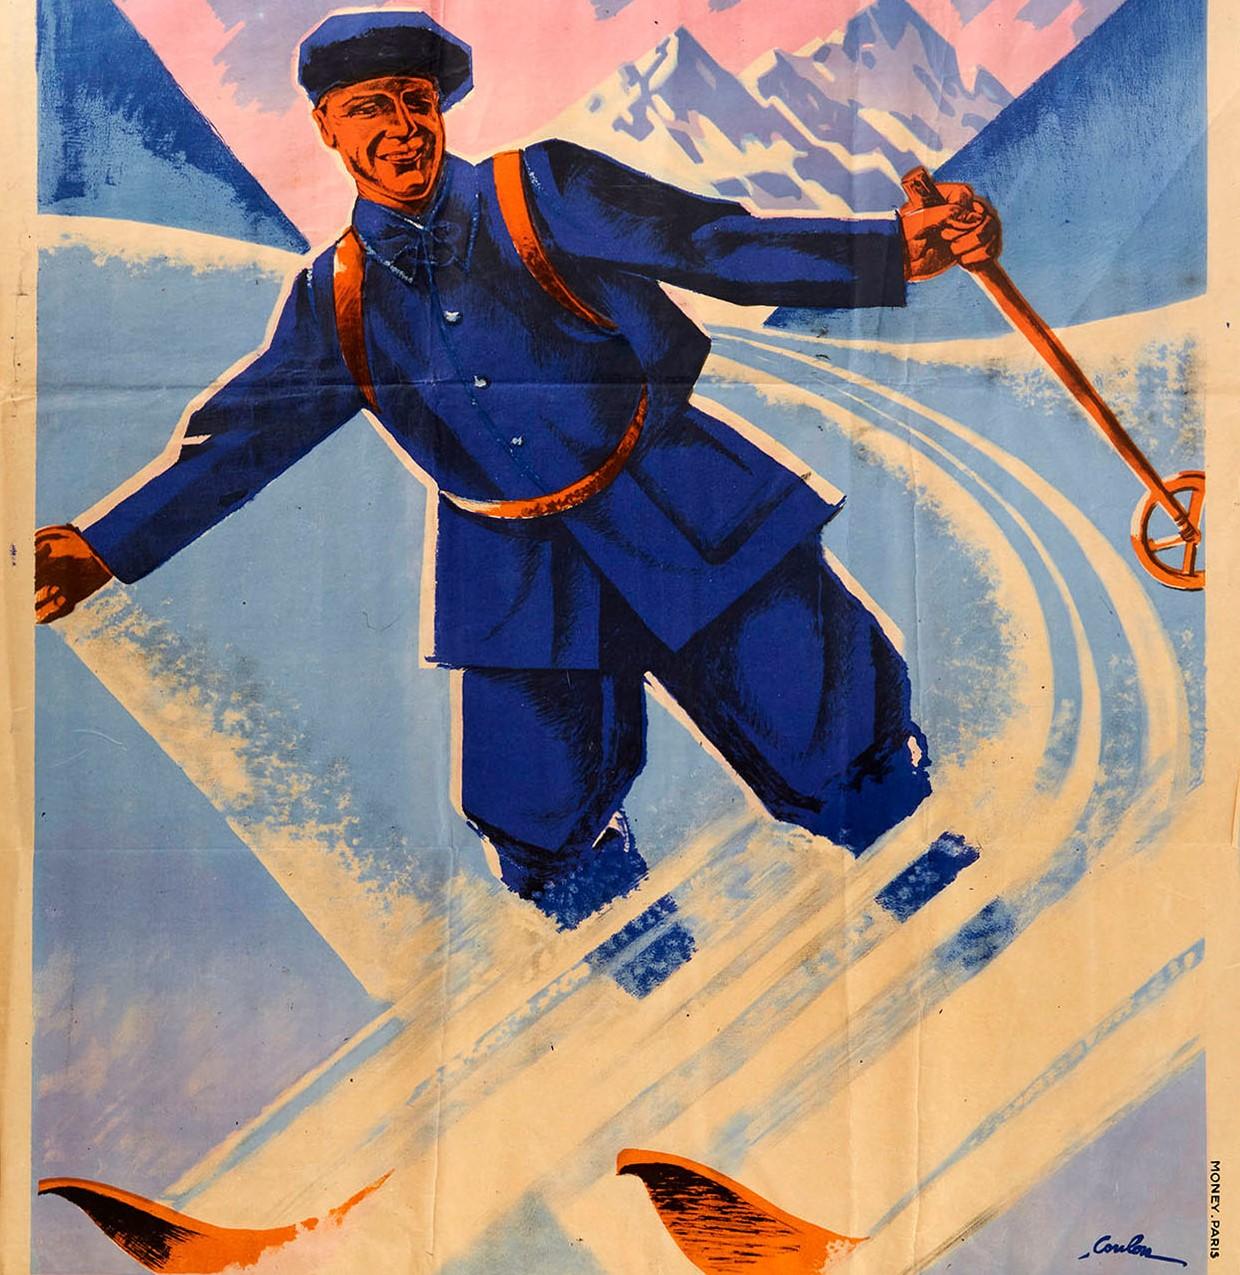 Original Vintage Poster Military Recruitment Troupes De La Metropole French Army - Print by Eric de Coulon